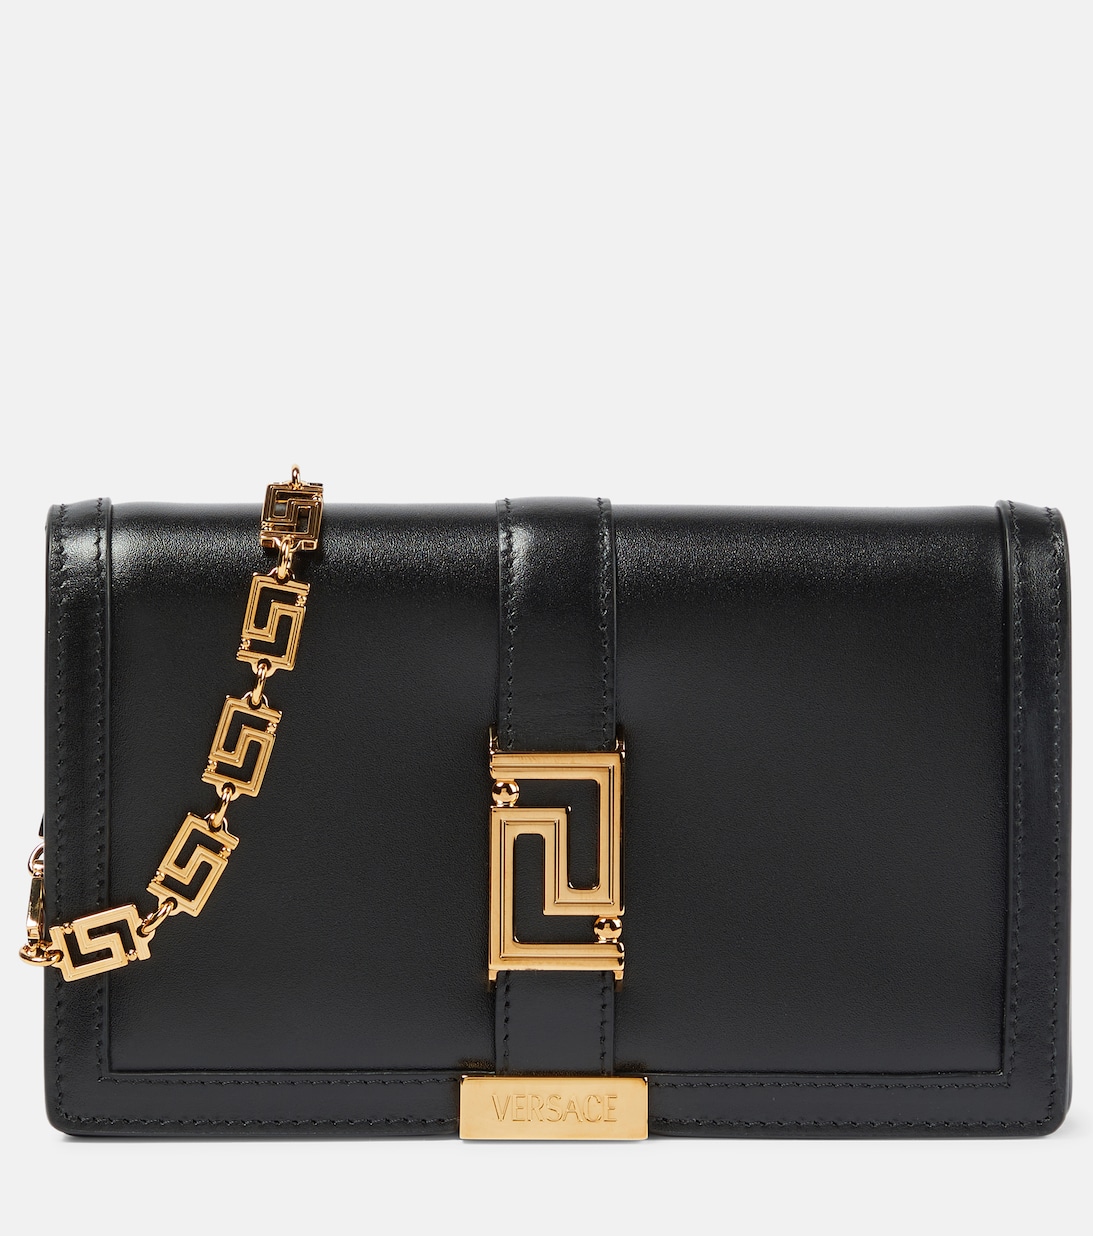 Кожаная сумка через плечо Greca Goddess Versace, черный сумка через плечо versace greca goddess черный